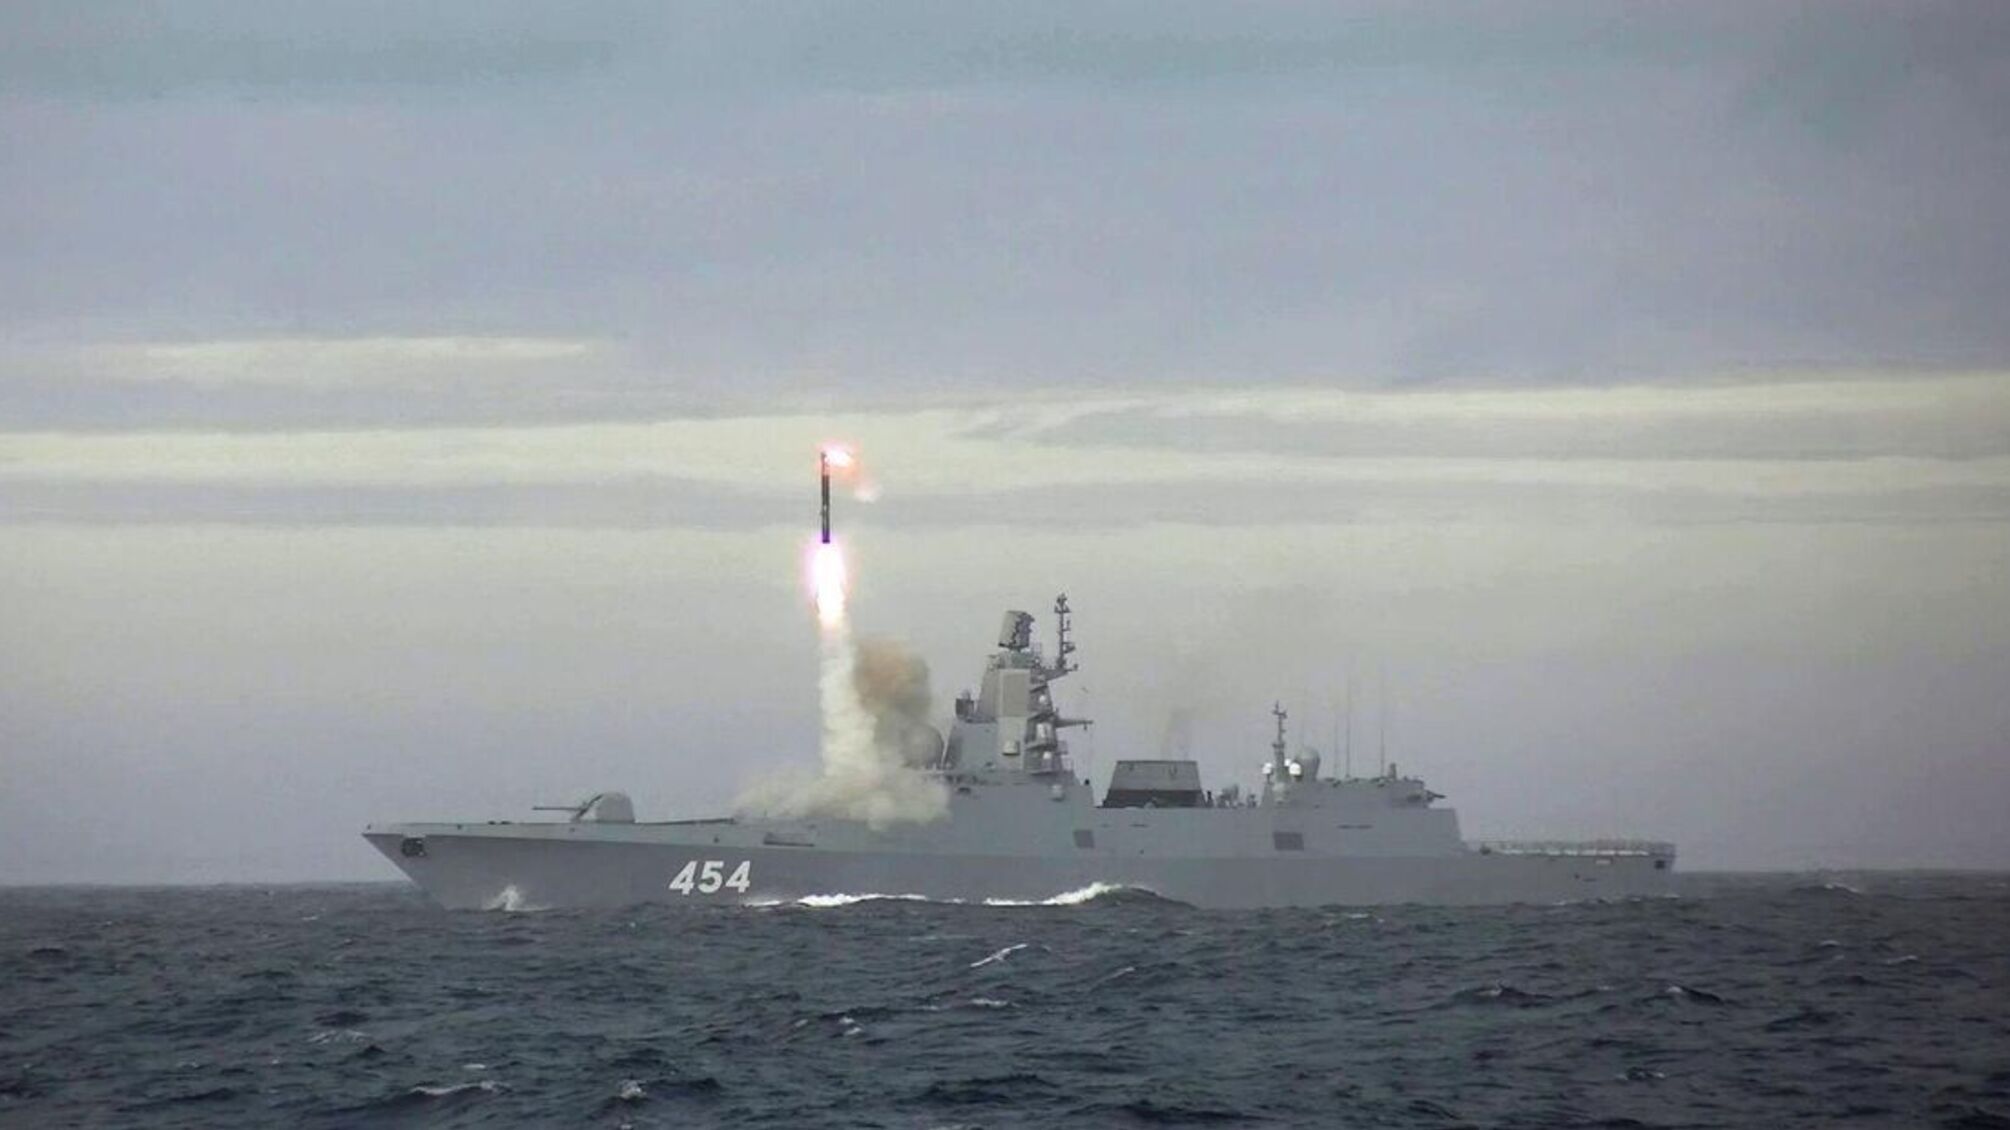 Впервые за 30 лет россия вывела в море корабли с ядерными боеголовками: детали